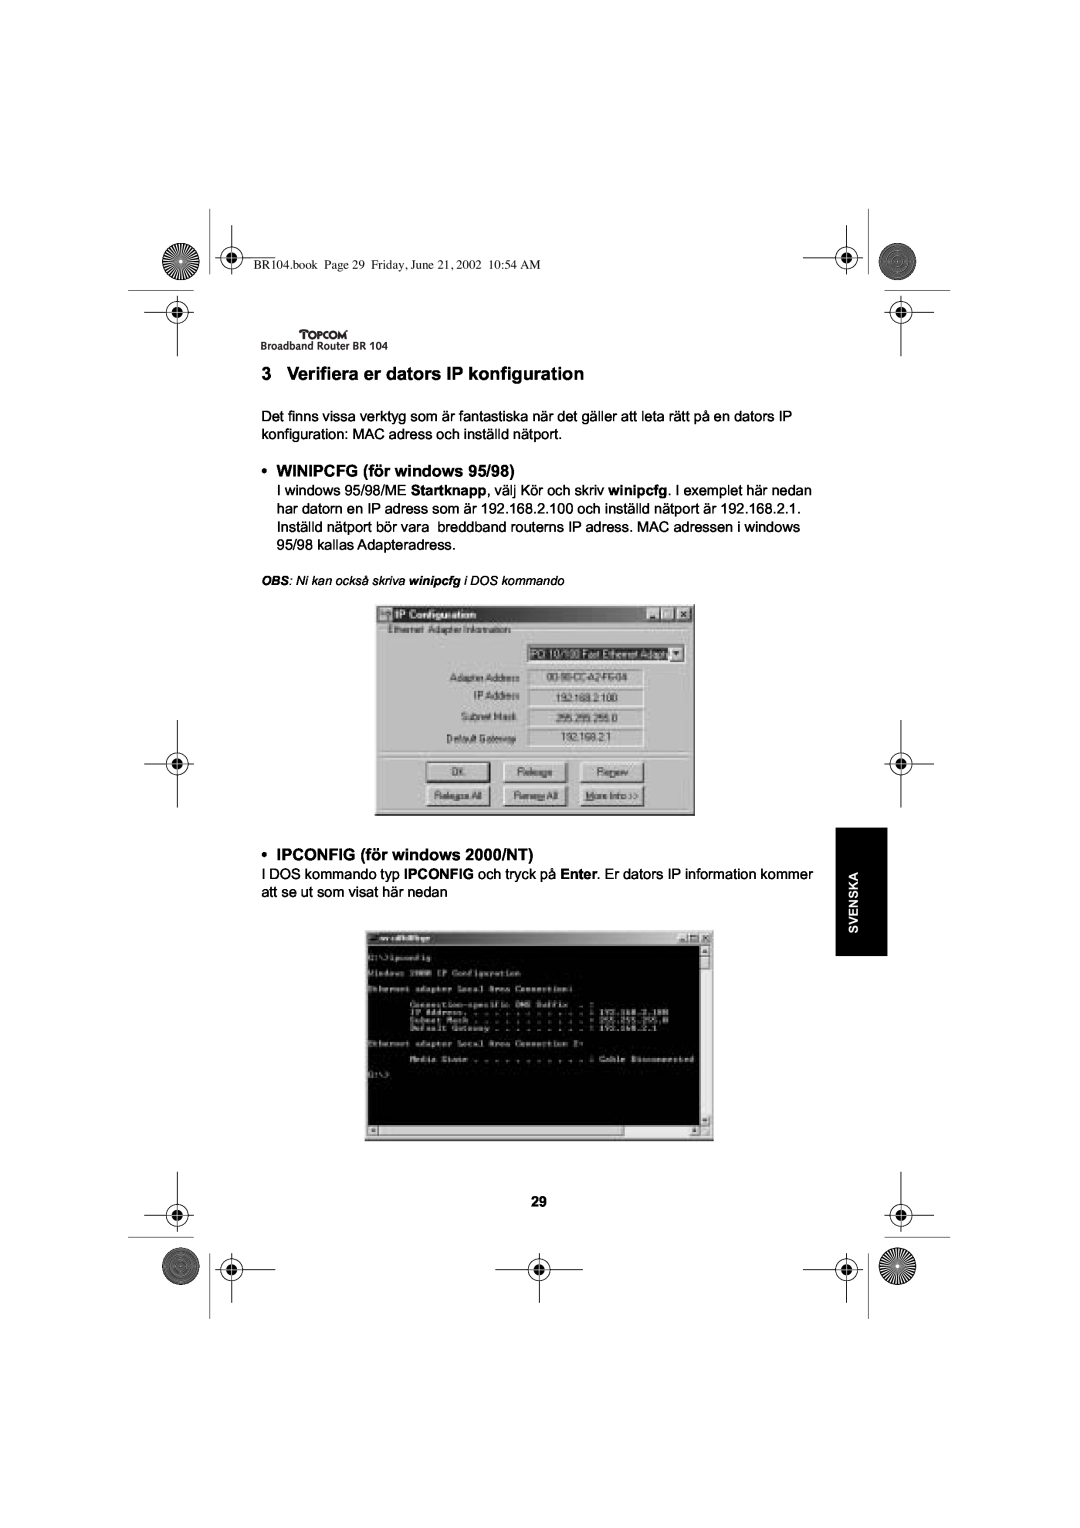 Topcom BR 104 manual Verifiera er dators IP konfiguration, WINIPCFG för windows 95/98, IPCONFIG för windows 2000/NT 